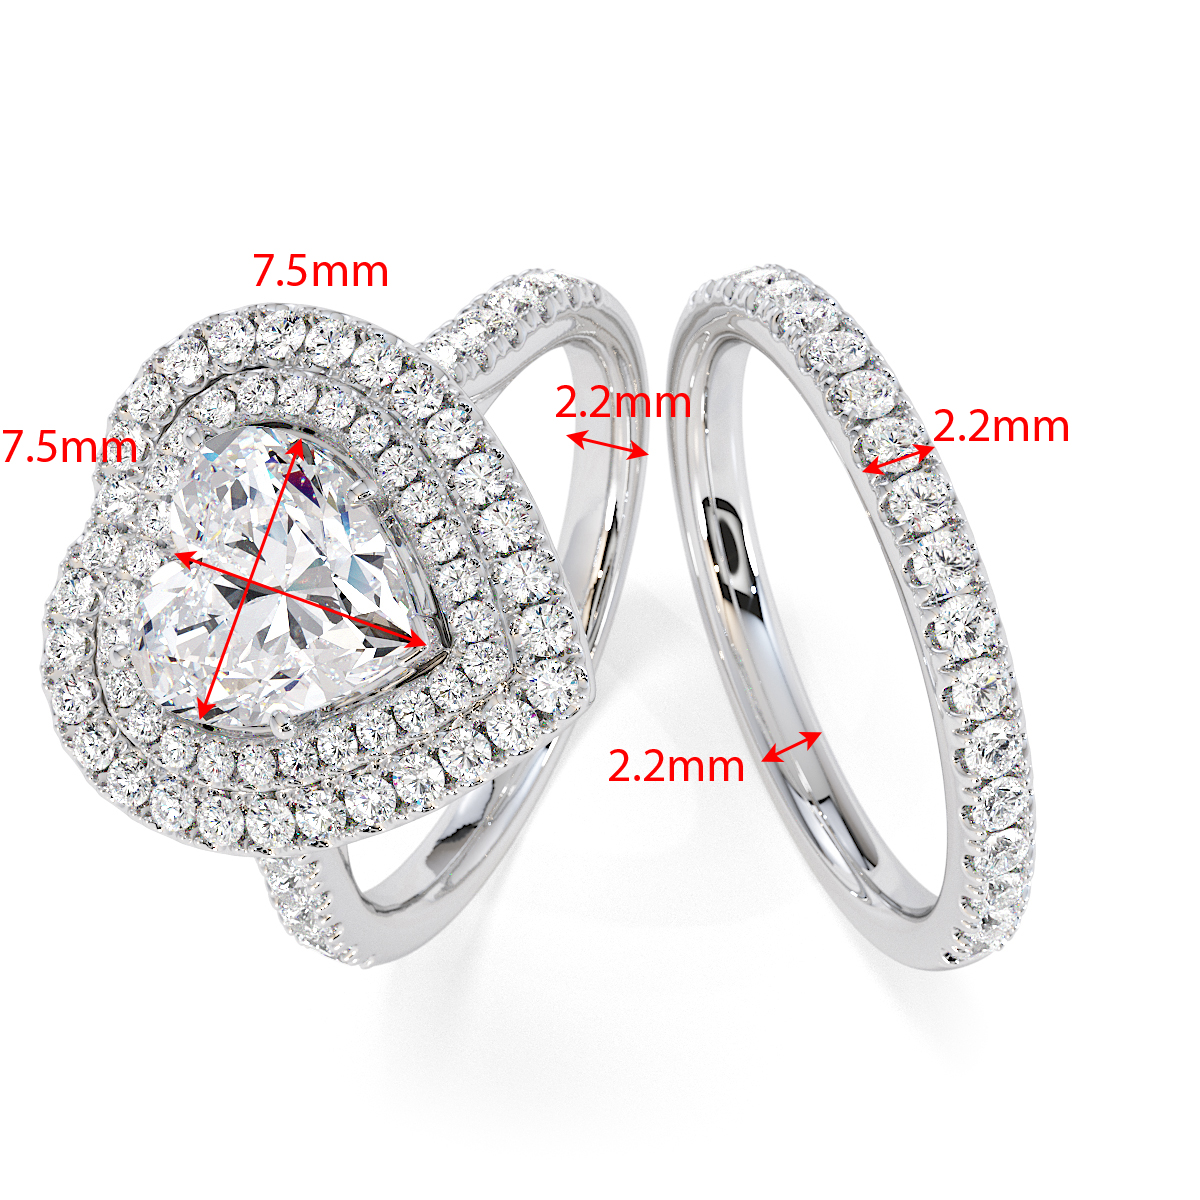 Gold / Platinum Tanzanite and Diamond Engagement Ring RZ3408